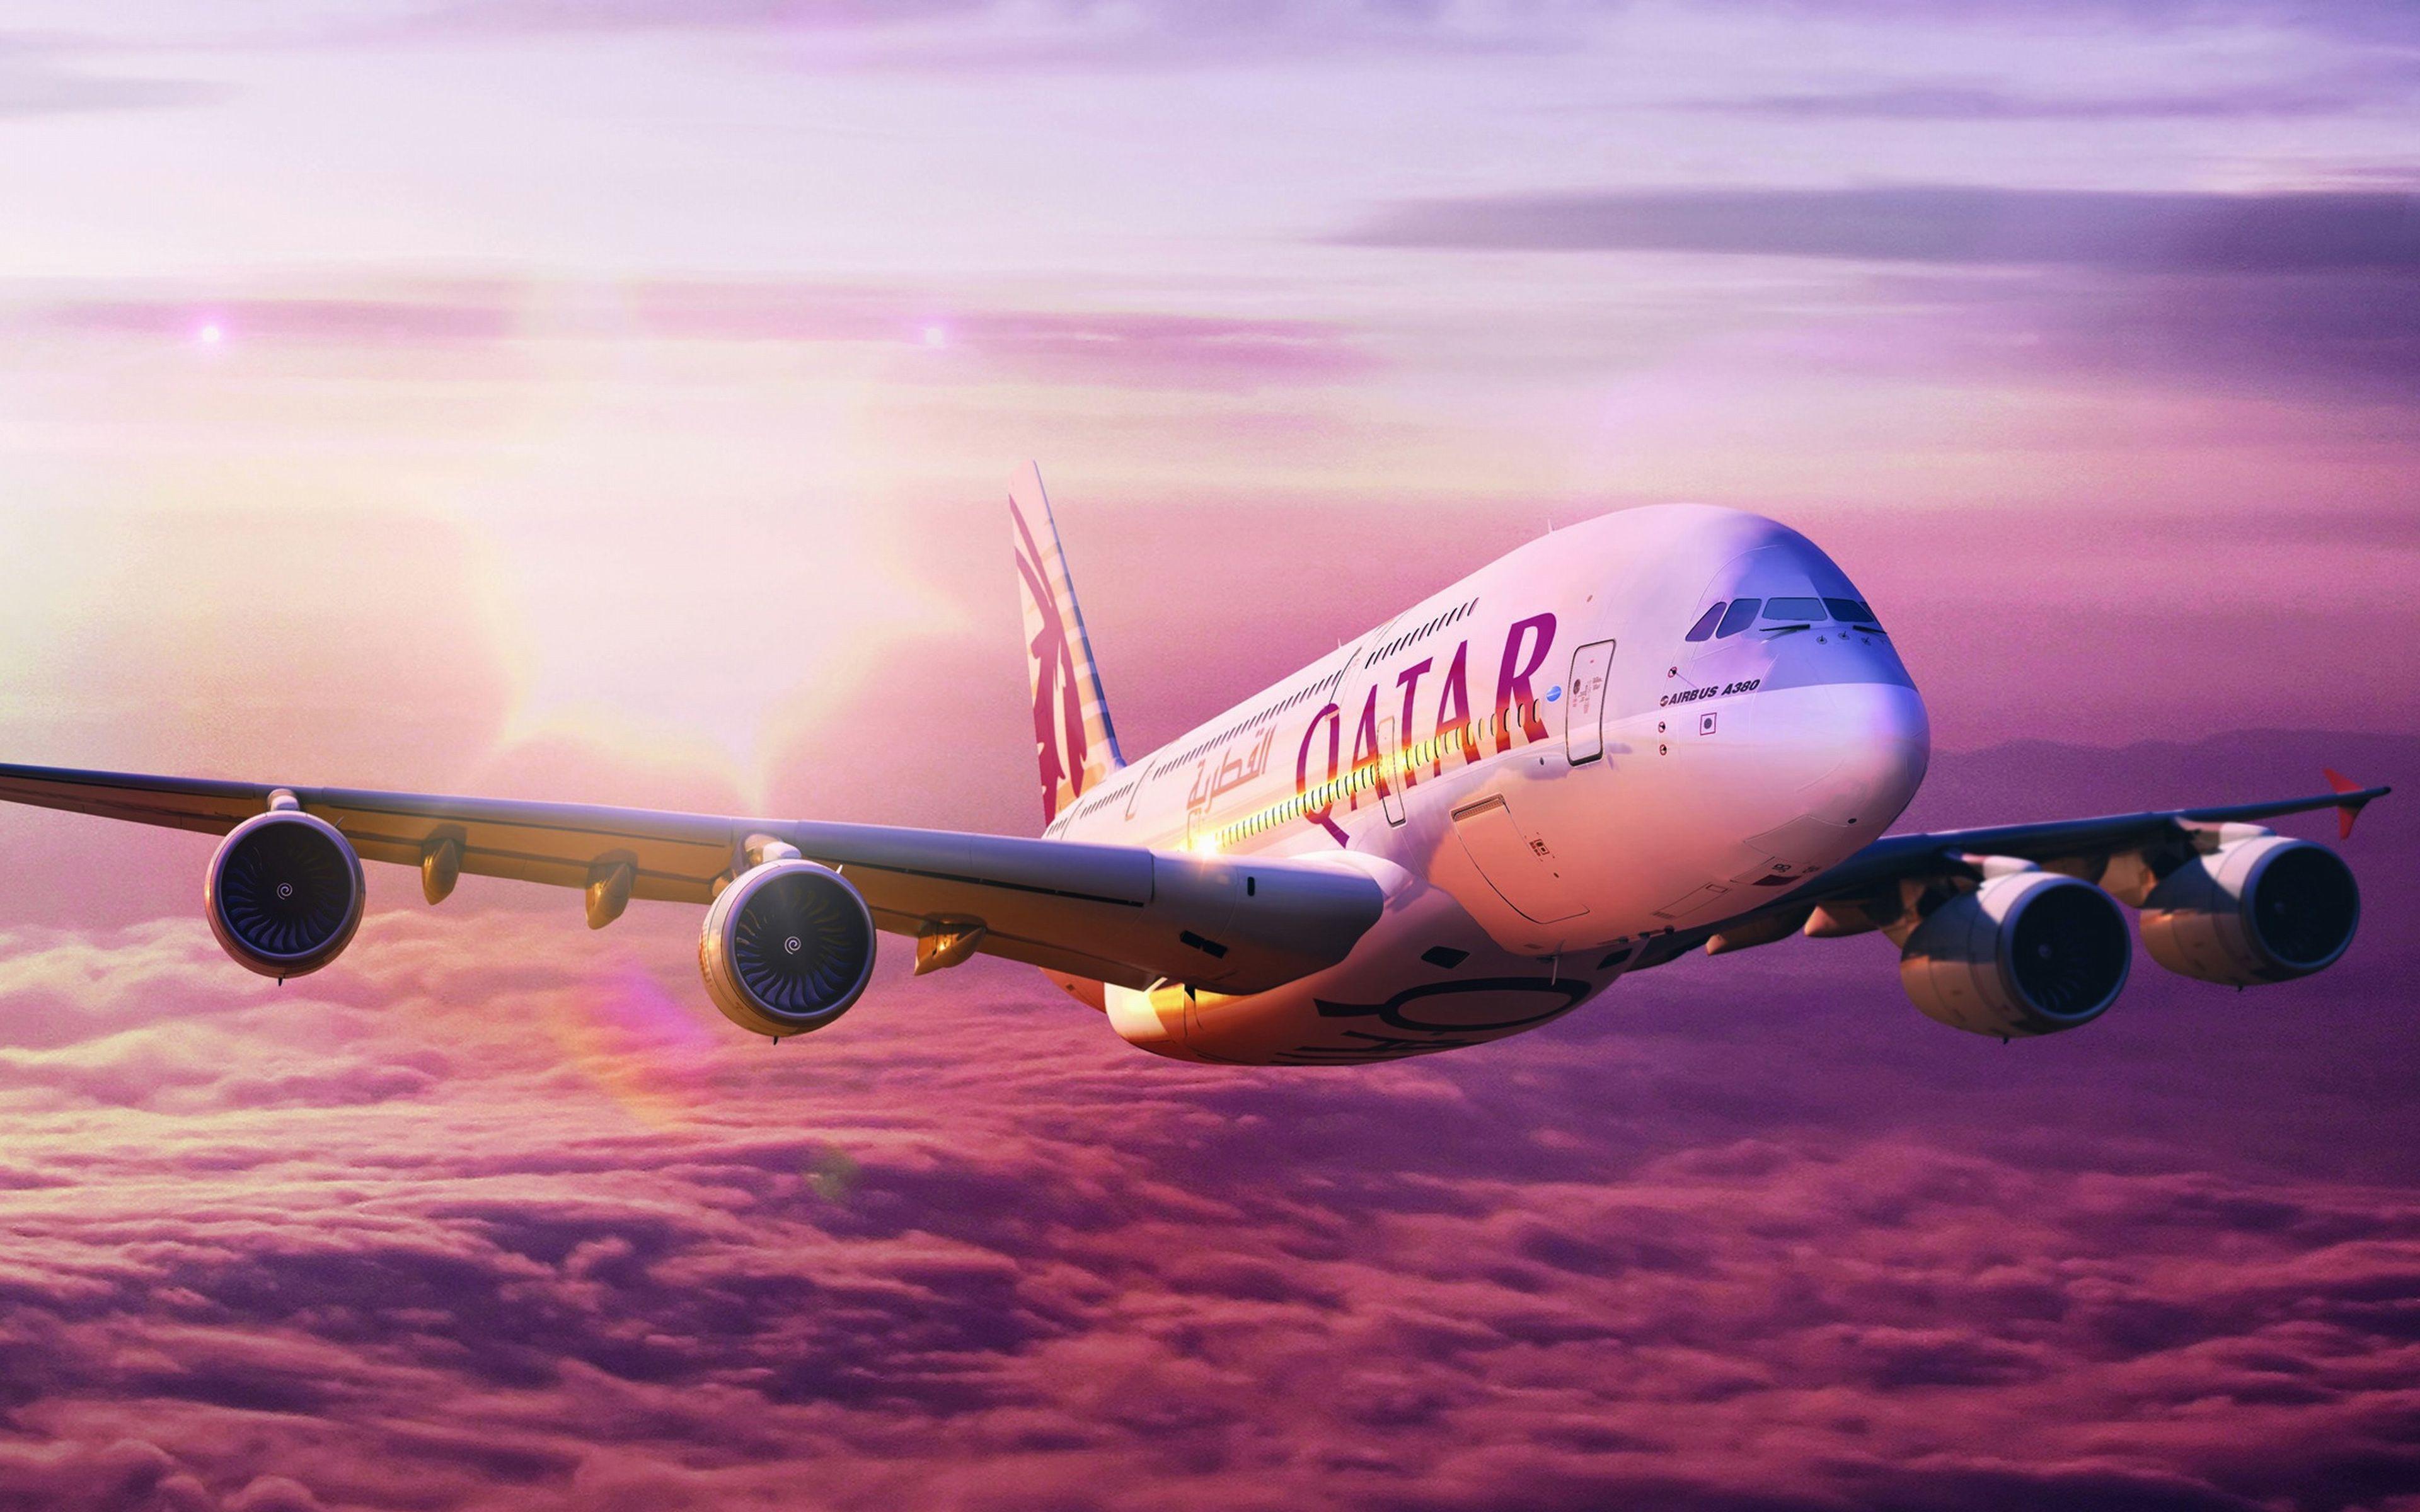 Download wallpaper Airbus A 4k, Qatar Airways, passenger plane